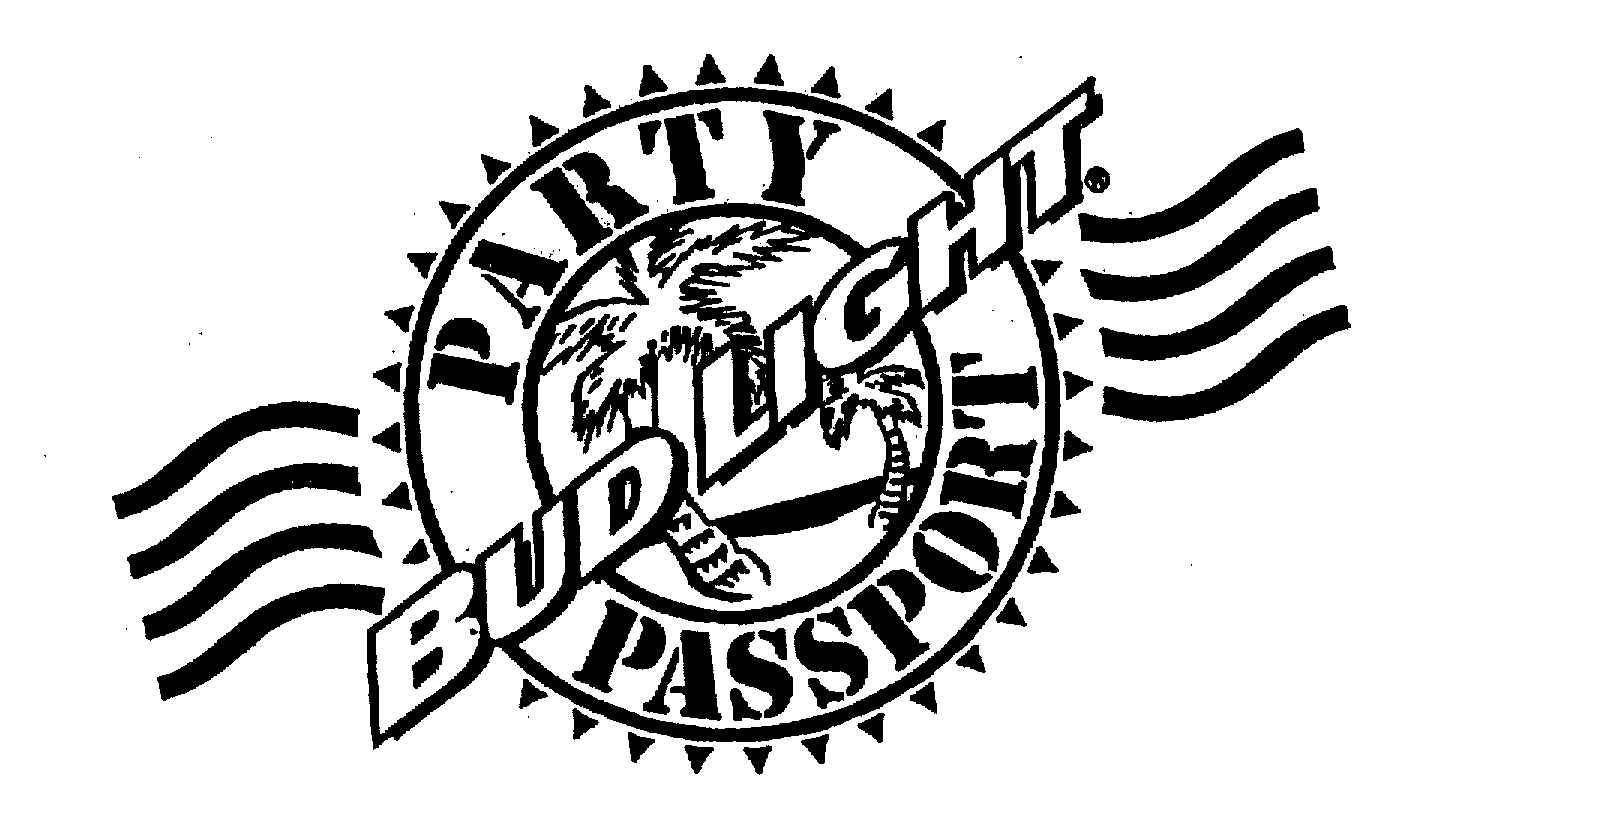  BUD LIGHT PARTY PASSPORT